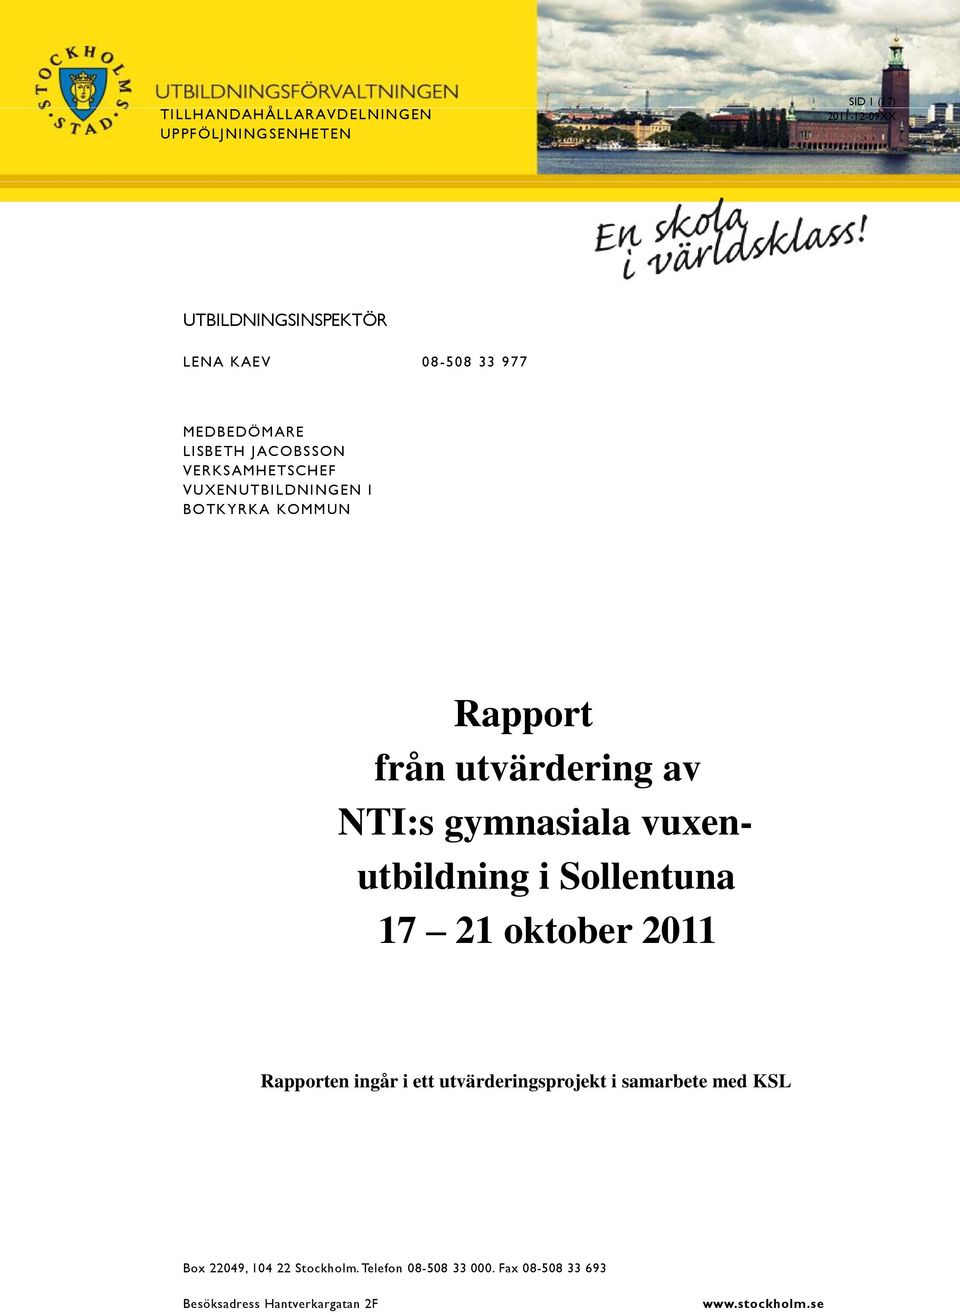 NTI: gymnaiala vuxenutbildning i Sollentuna 17 21 oktober 2011 Rapporten ingår i ett utvärderingprojekt i amarbete